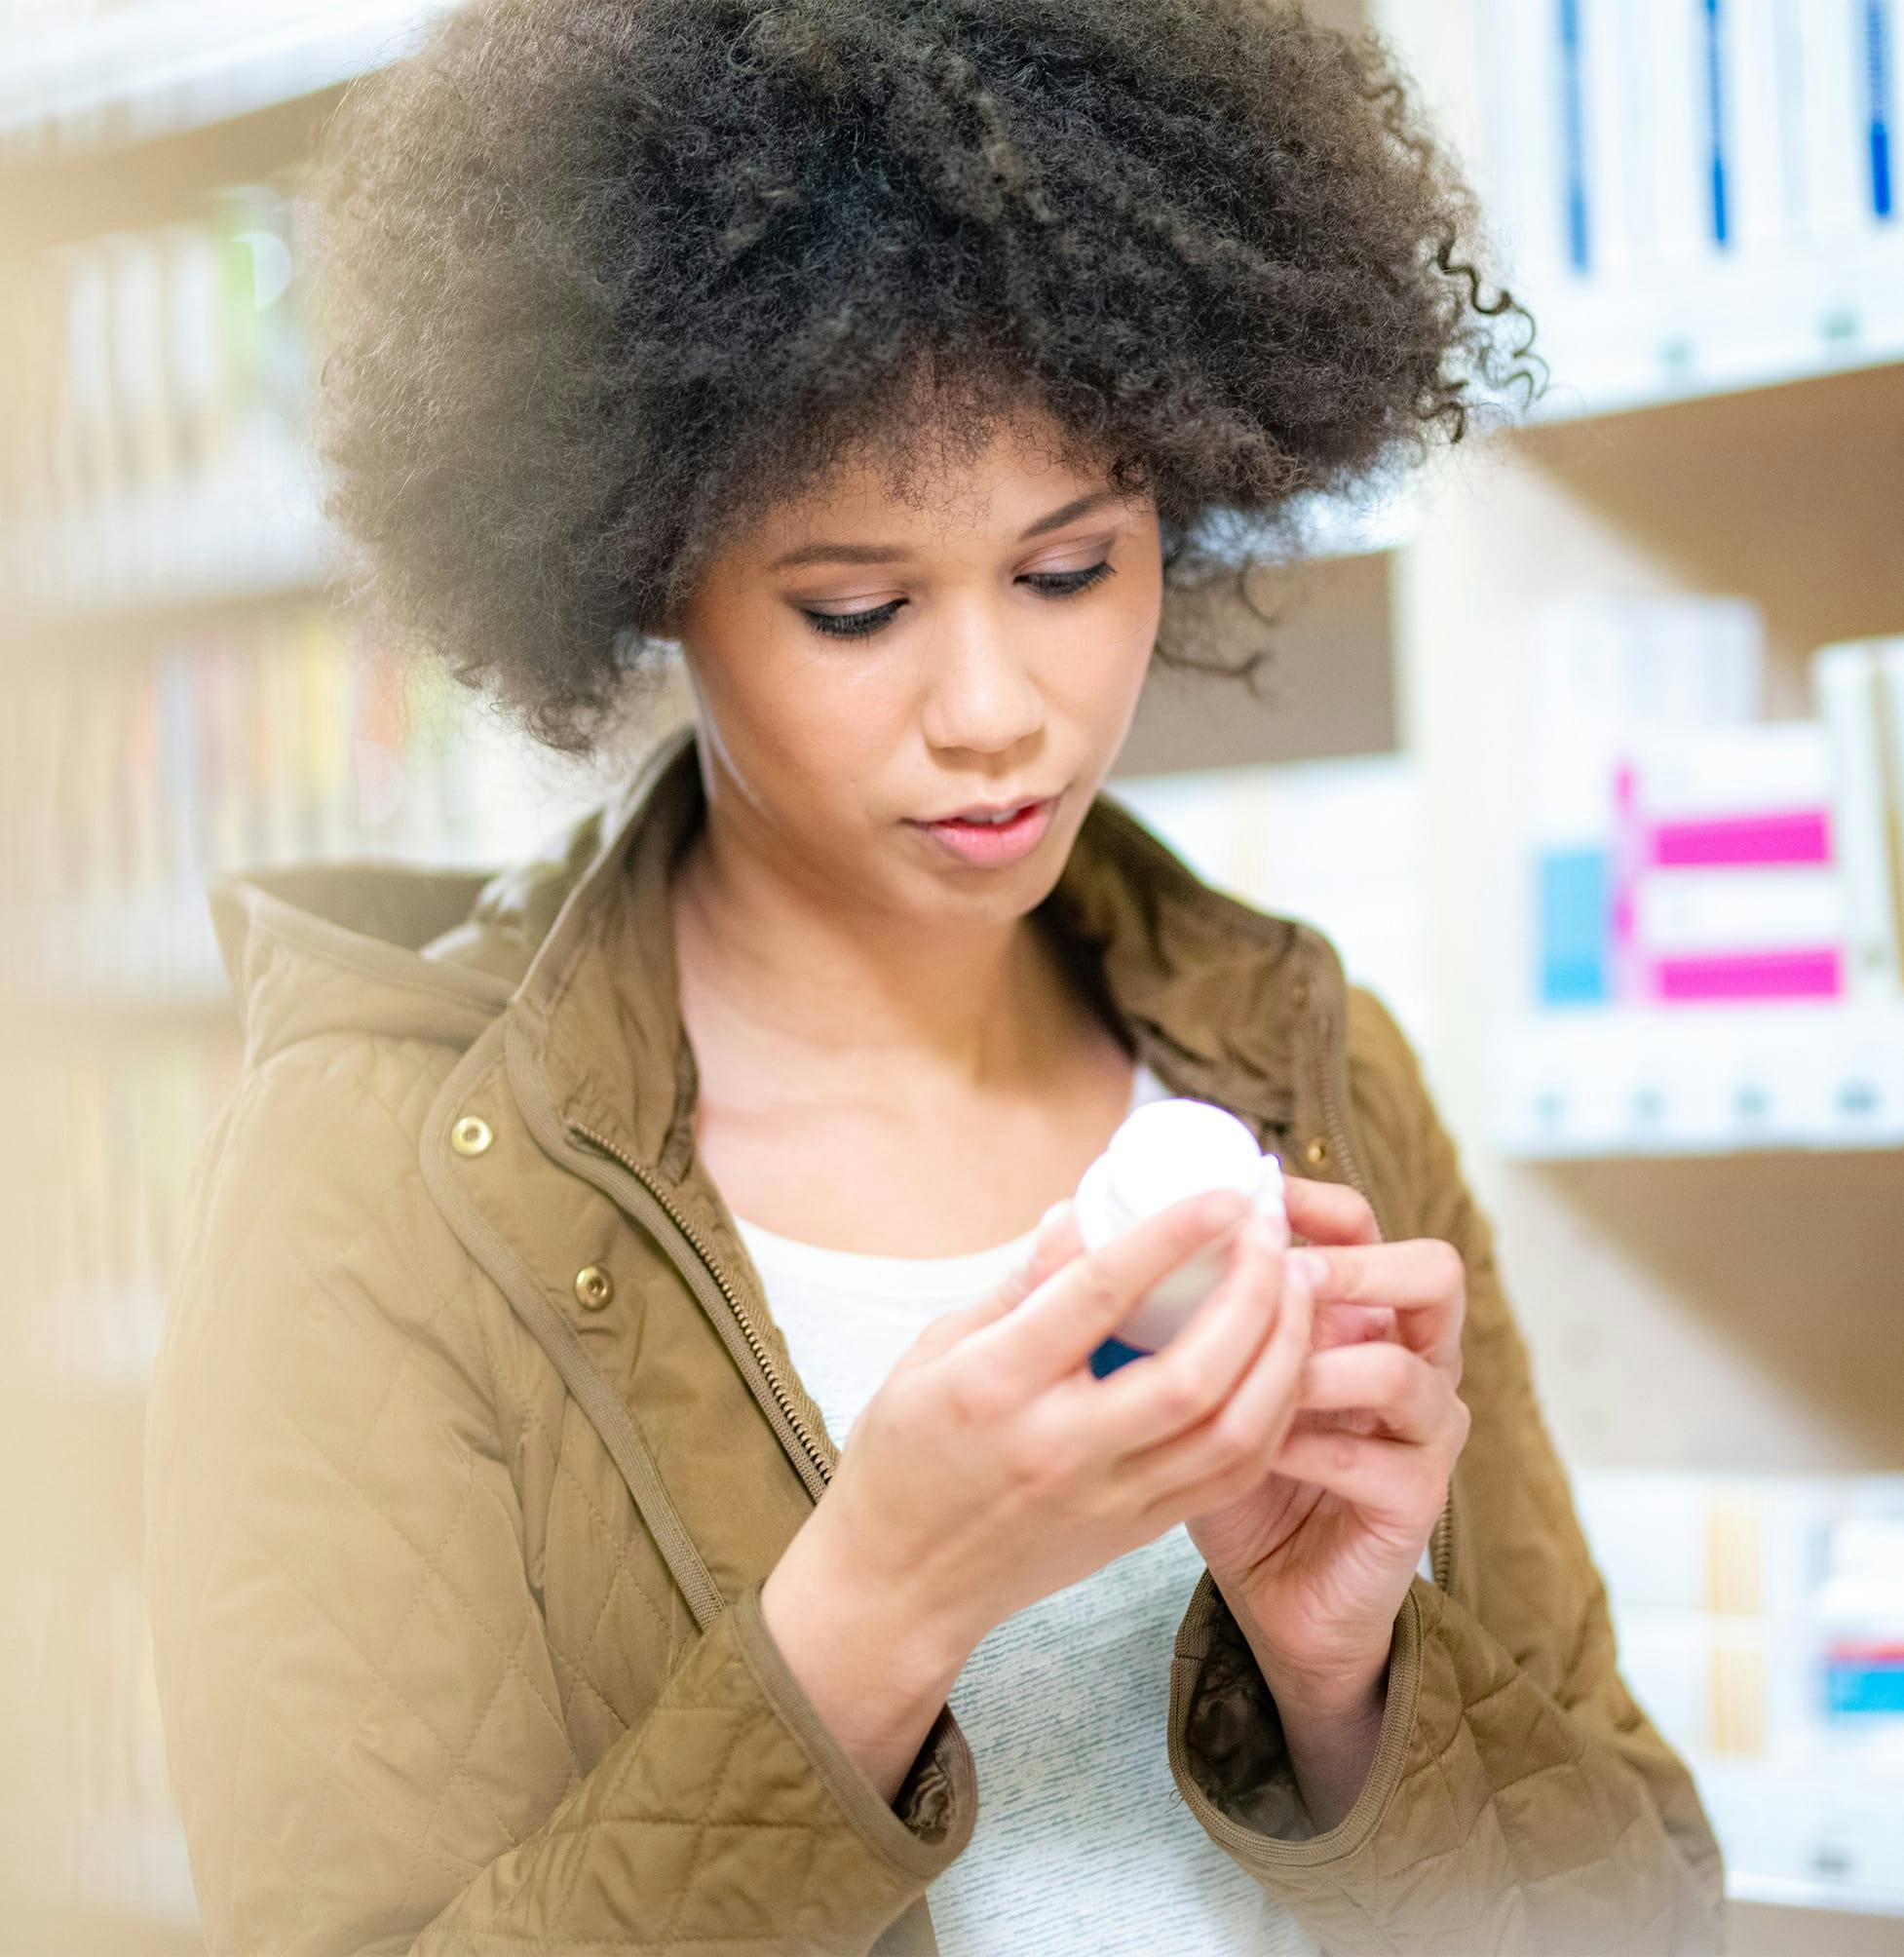 Woman looking at a prescription